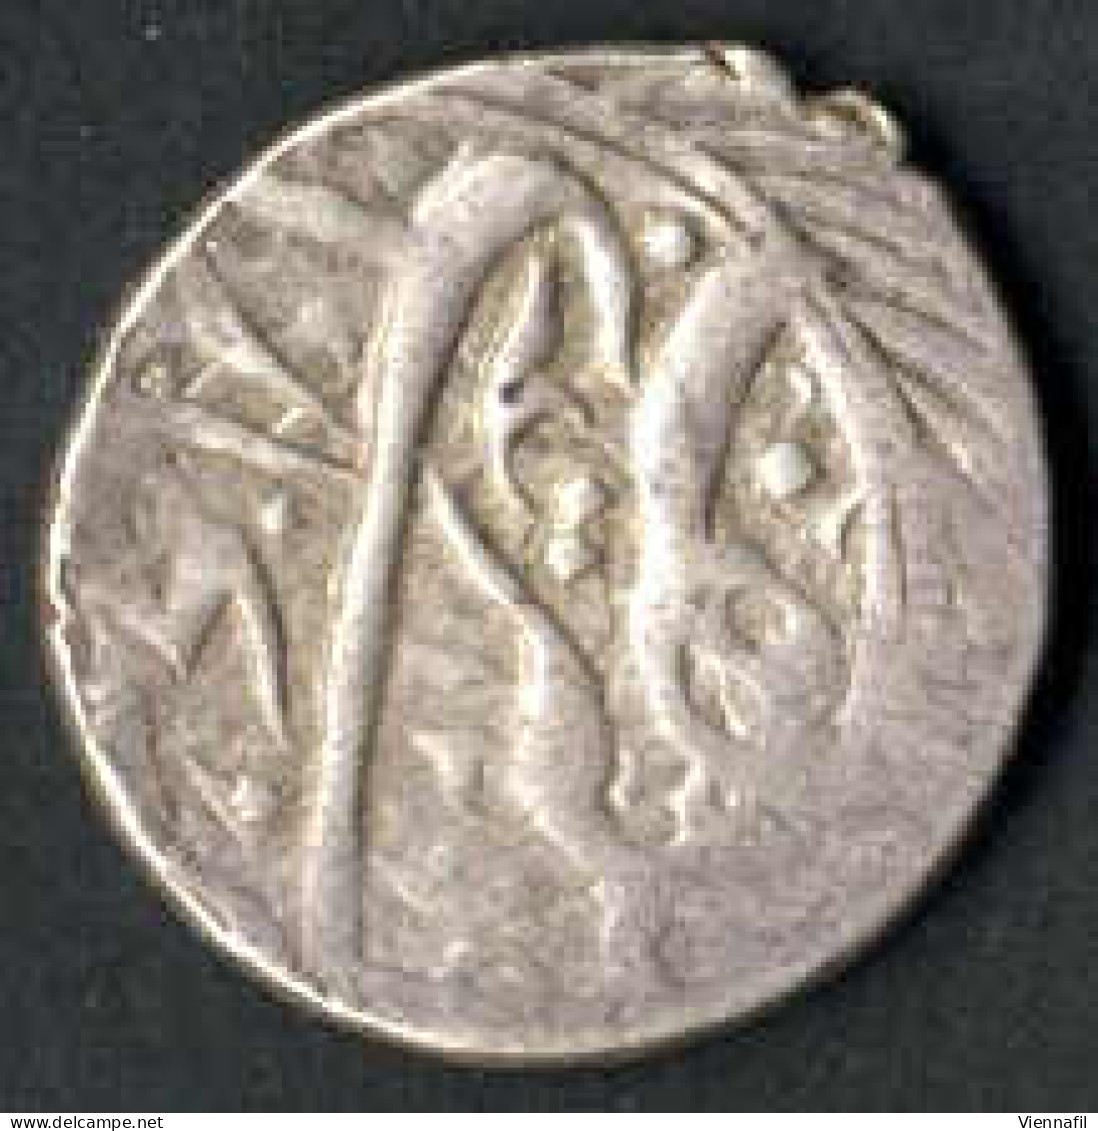 Russisch Turkestan Emirat von Bukhara, Tenga Silber, 1299,1306,1310,1319 AH, Craig 91 Y 2, sehr schön-, 6 Stück